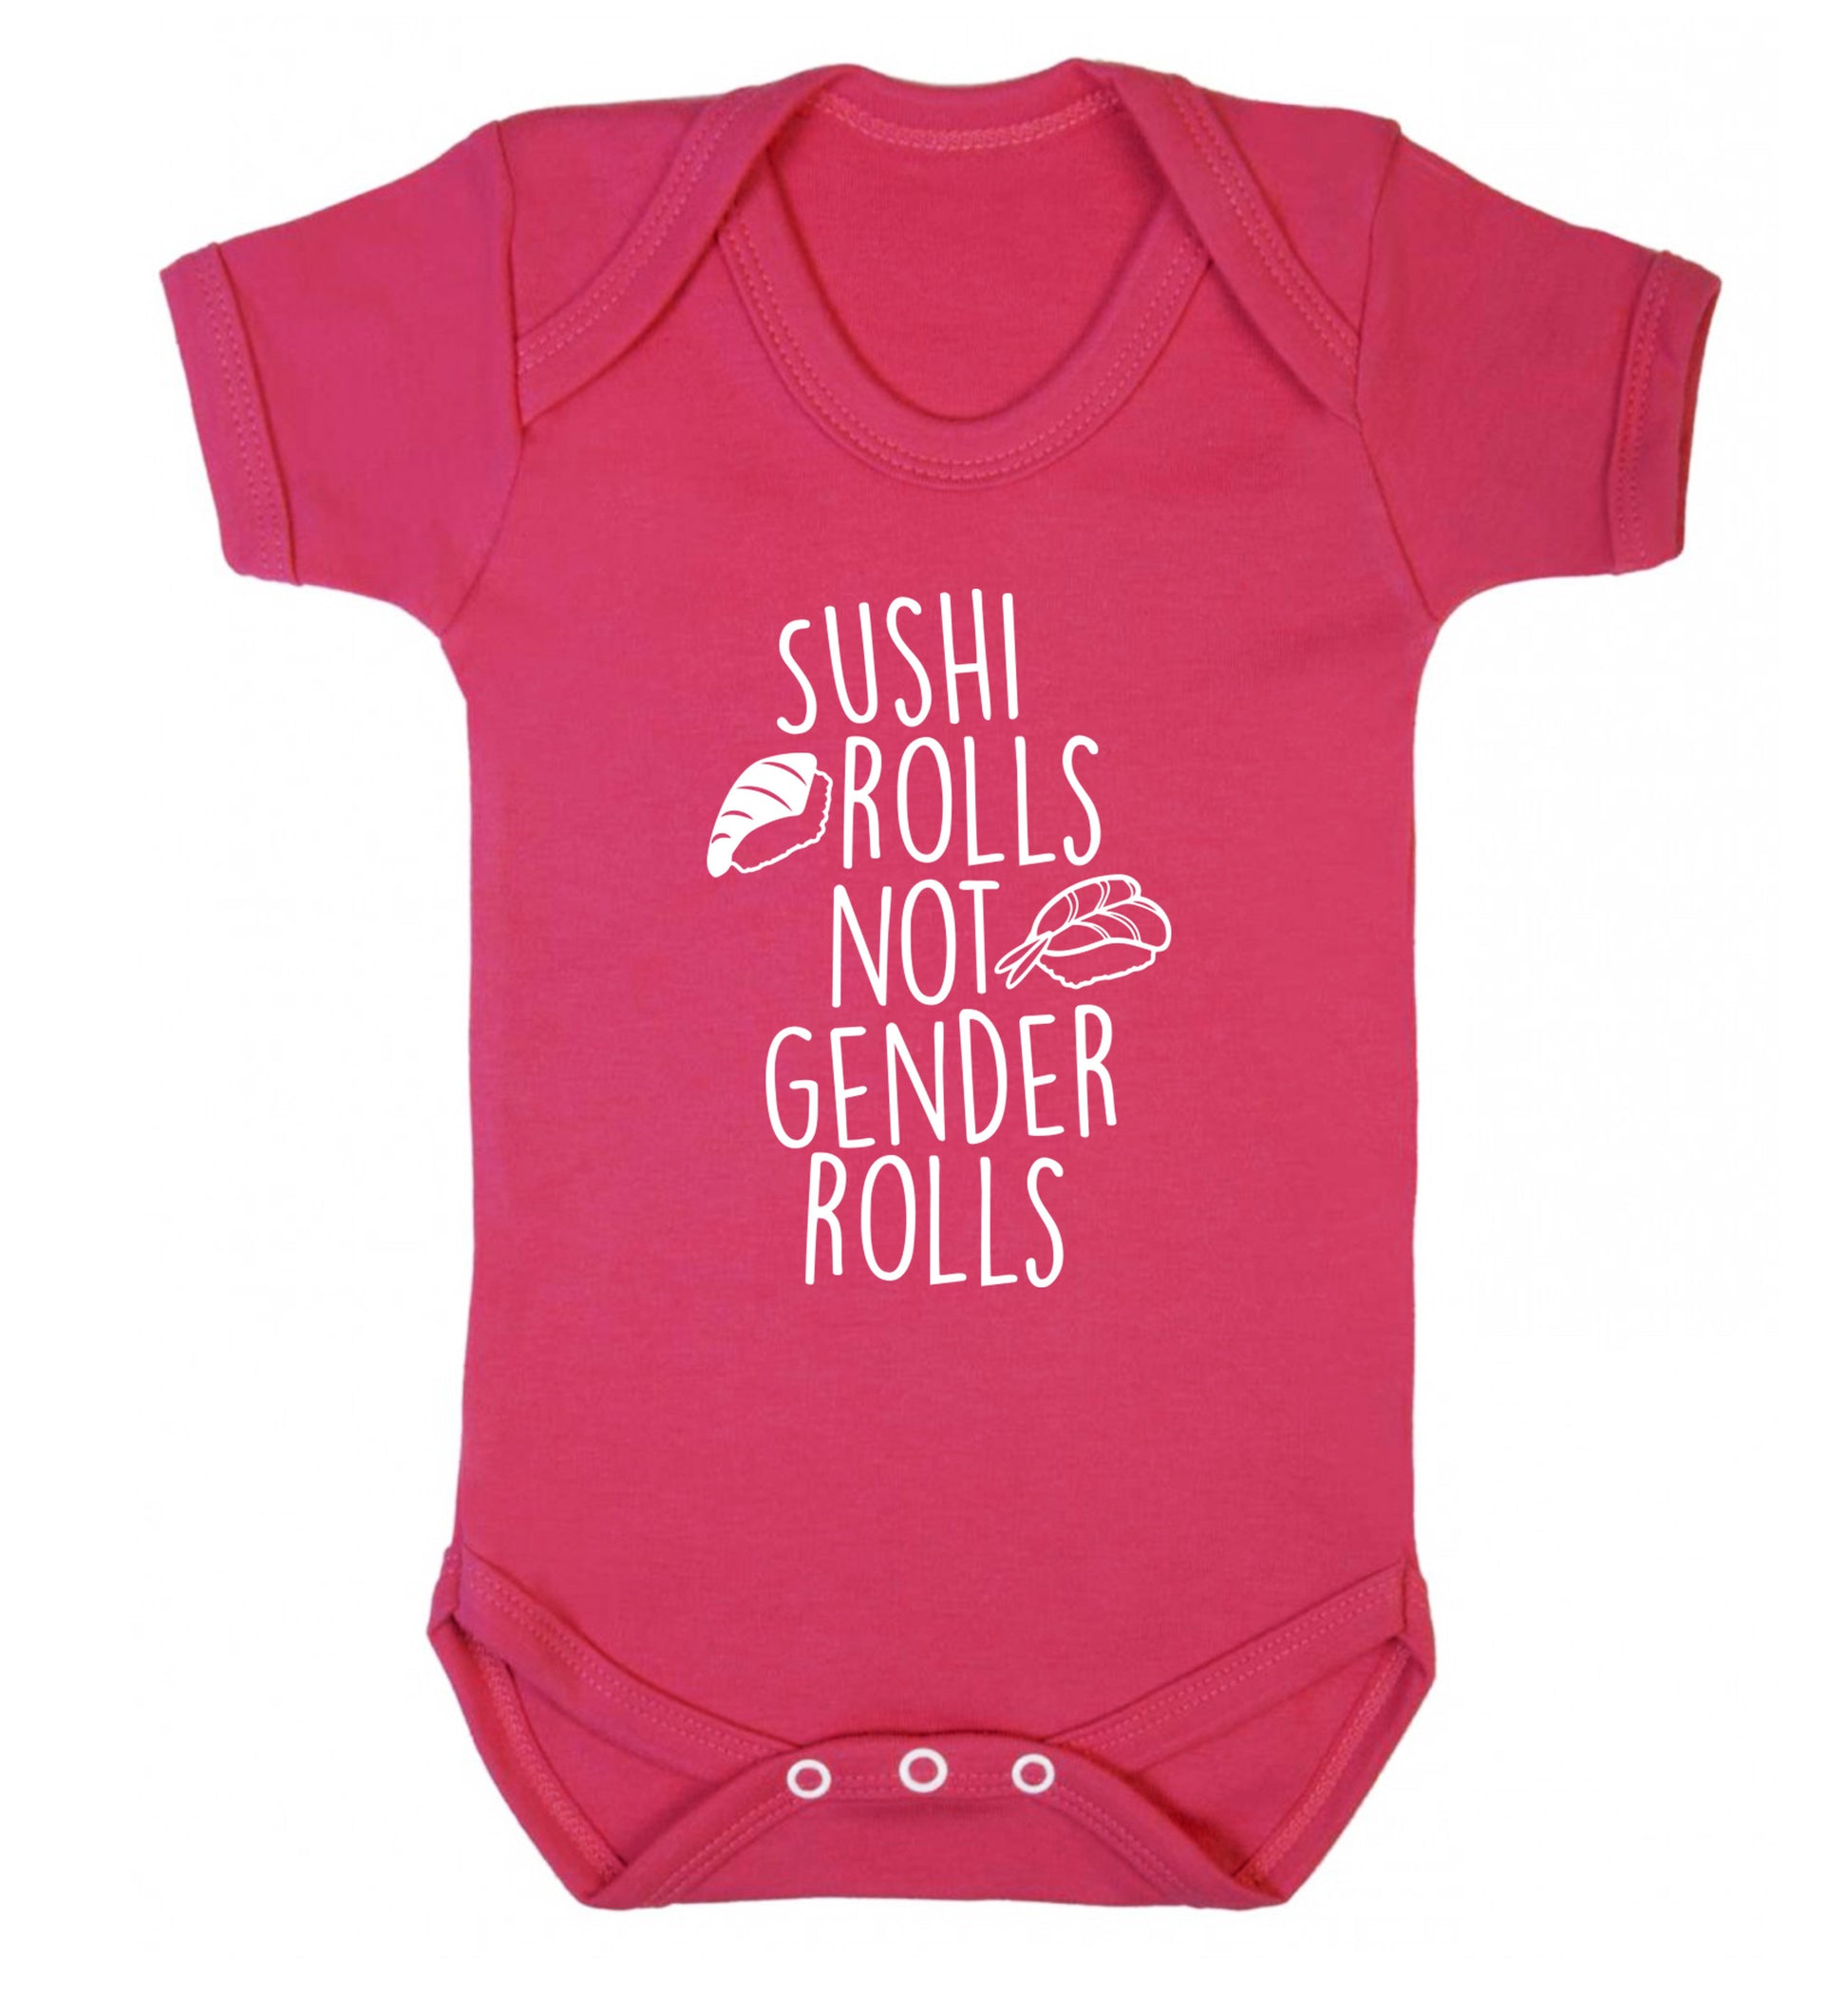 Sushi rolls not gender rolls Baby Vest dark pink 18-24 months